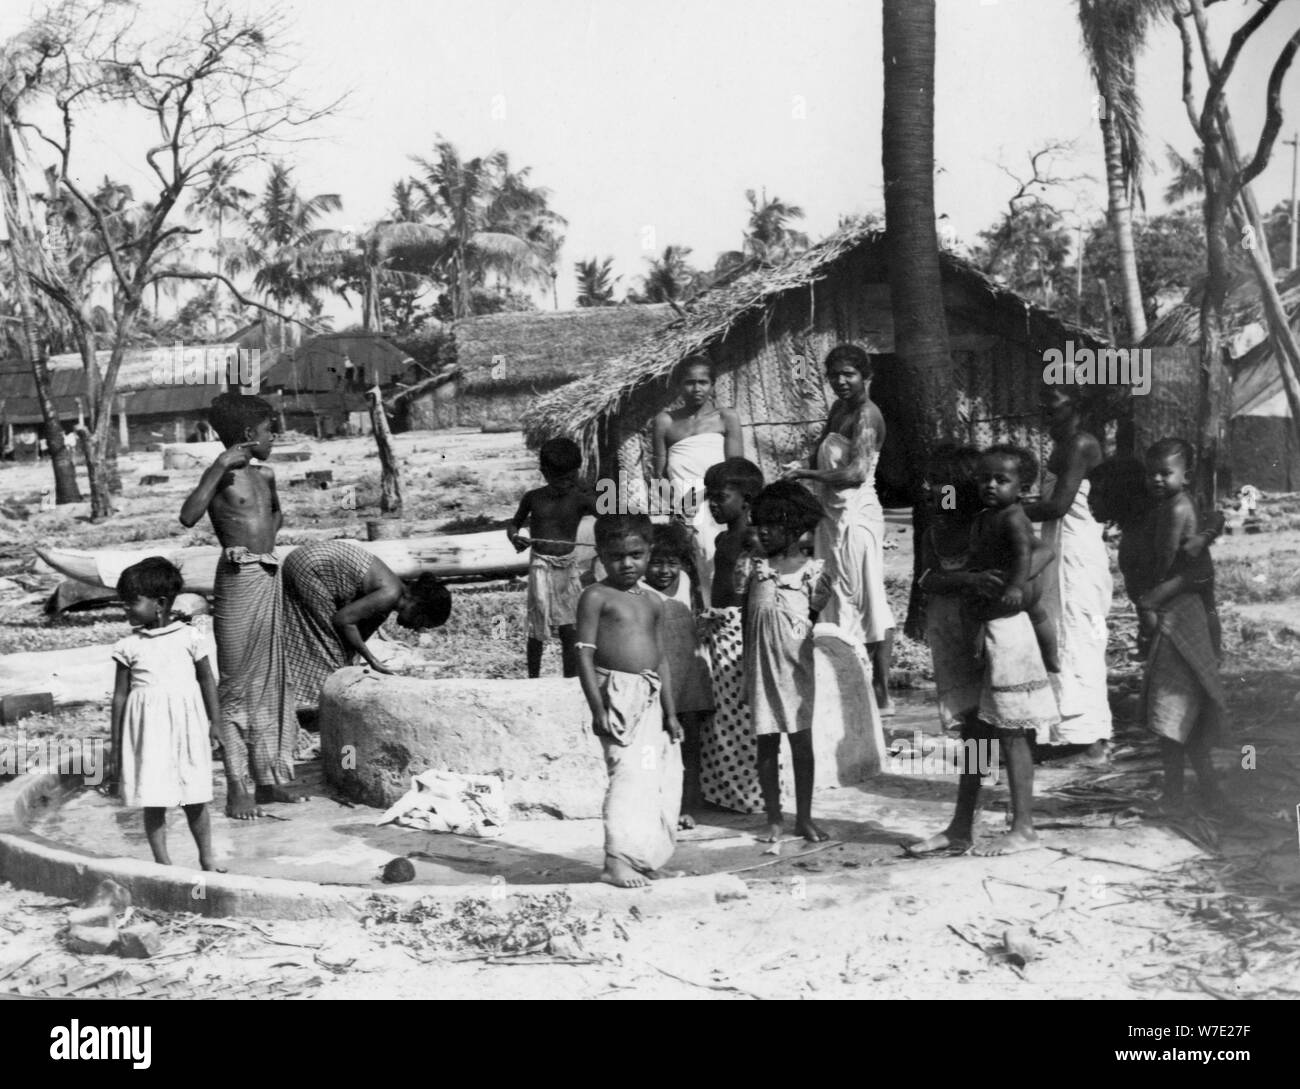 Village scene, Trincomalee, Ceylon, 1945. Artist: Unknown Stock Photo